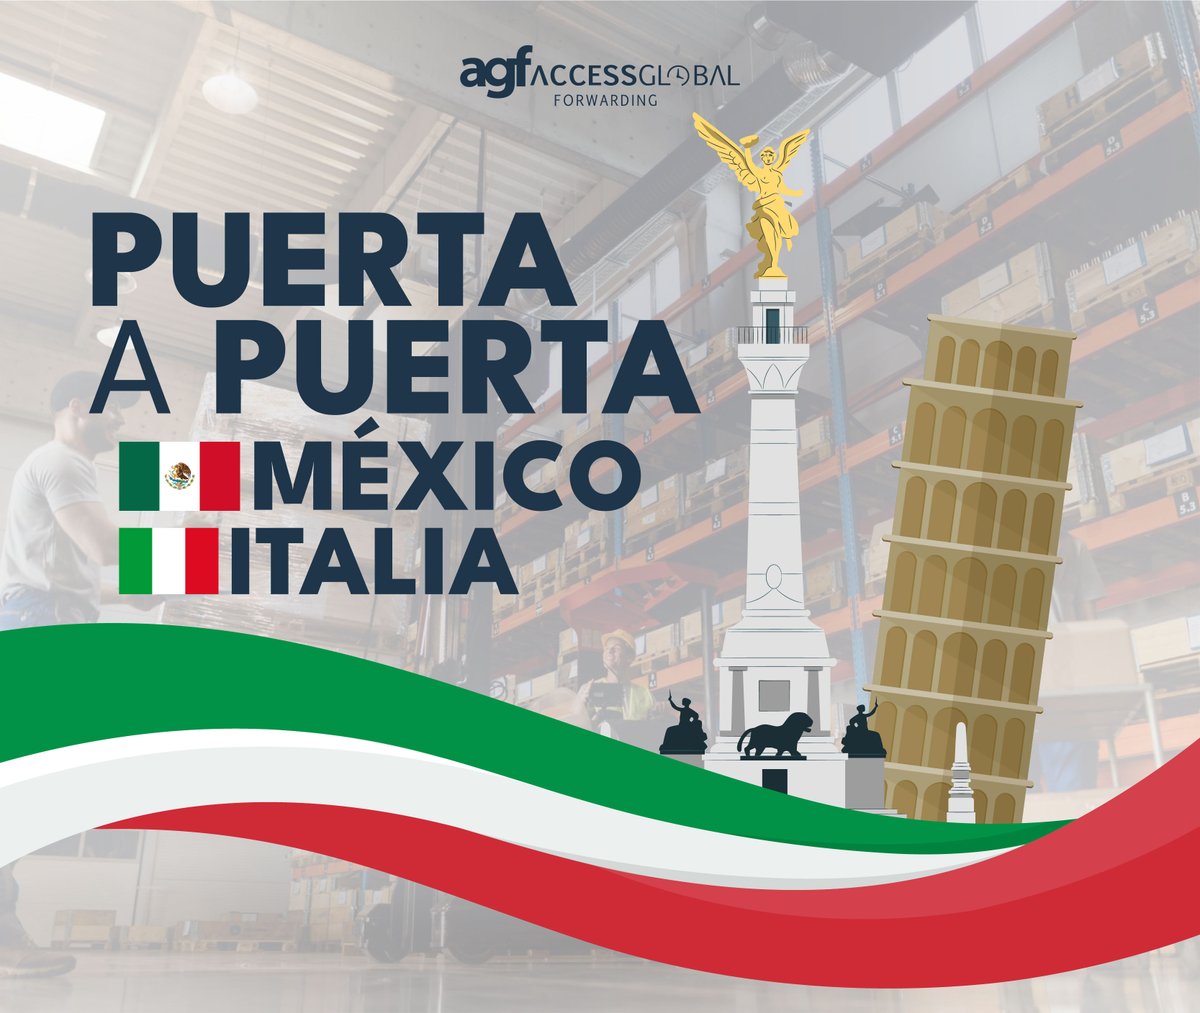 ¡Descubre nuestra solución puerta a puerta de México a Italia! Con AGF ¡Contáctanos hoy mismo para comenzar tu envío sin complicaciones! 🌍📦

📞 +52(55) 57851048
✉️ info@agf.com.mx
🌐 agf.com.mx
-
#AGF #EnvíosInternacionales #Logística #MéxicoItalia